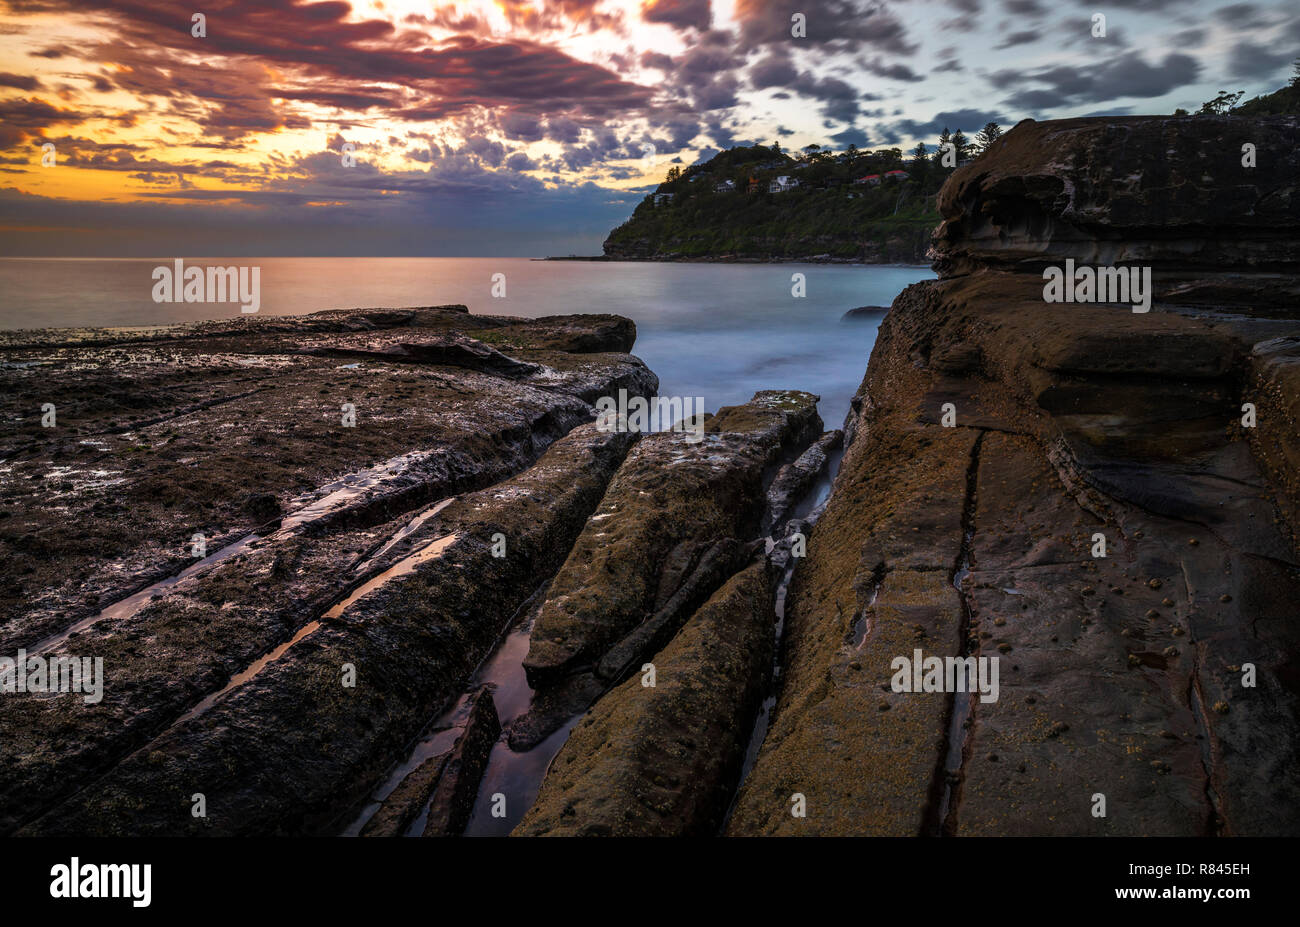 Whale Beach est une plage du nord, banlieue de Sydney, dans l'état de Nouvelle-Galles du Sud, Australie. Banque D'Images